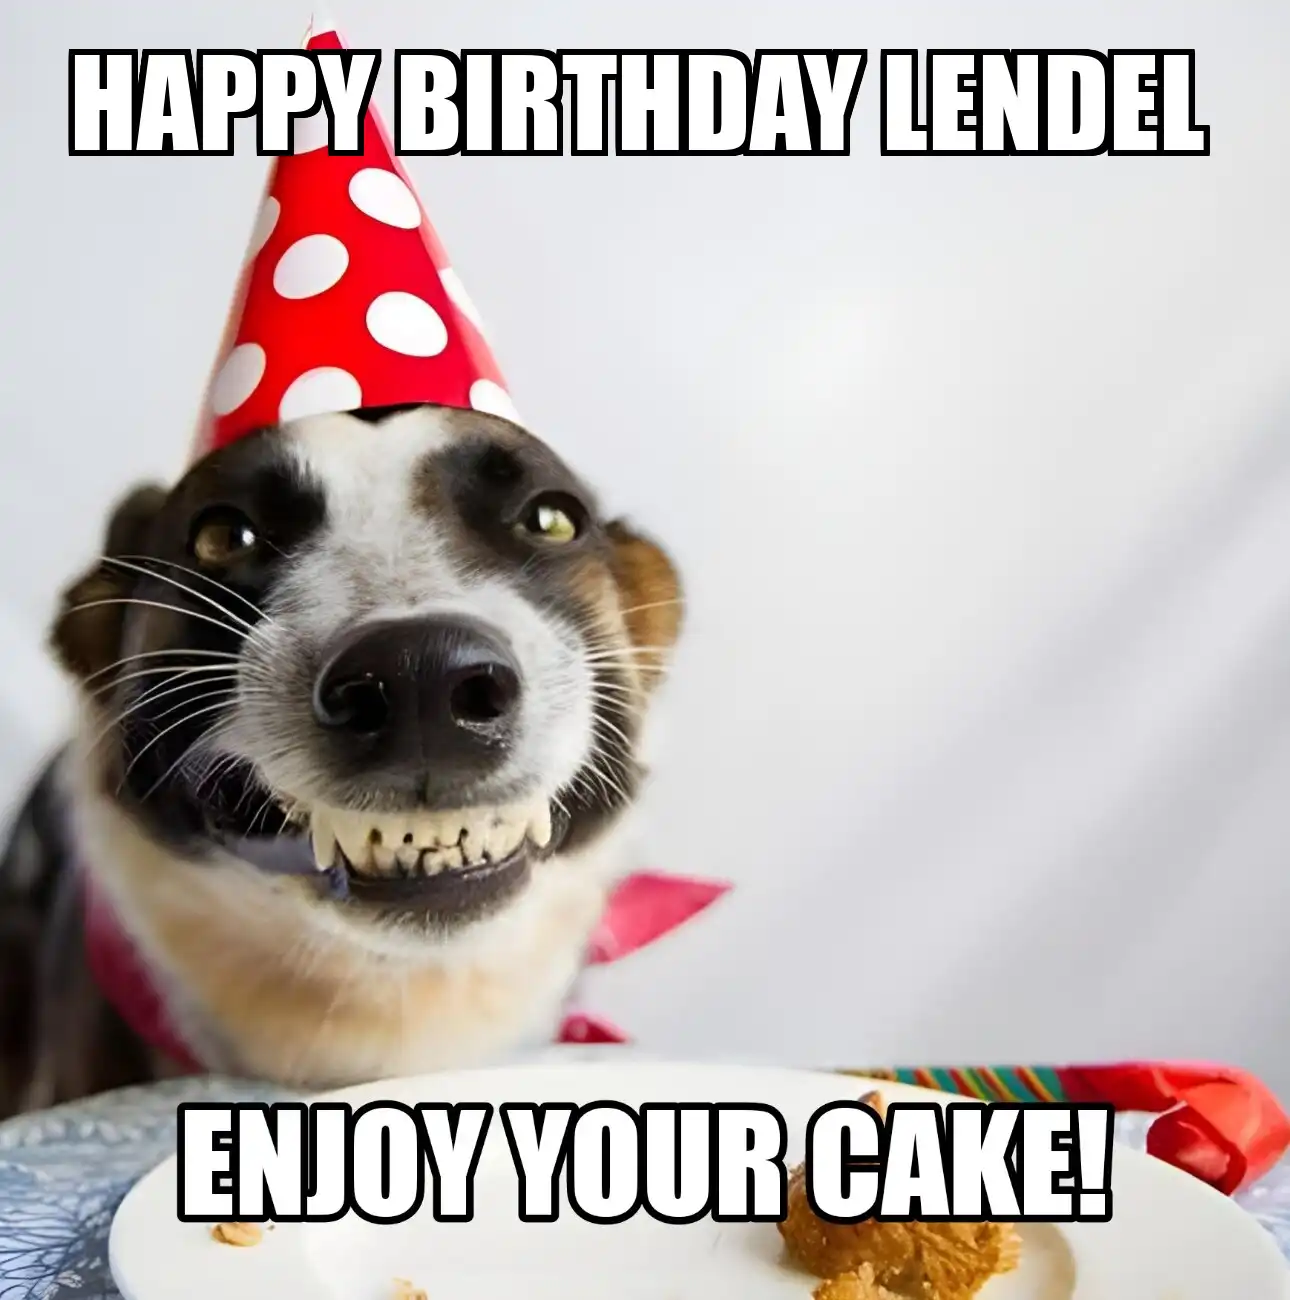 Happy Birthday Lendel Enjoy Your Cake Dog Meme